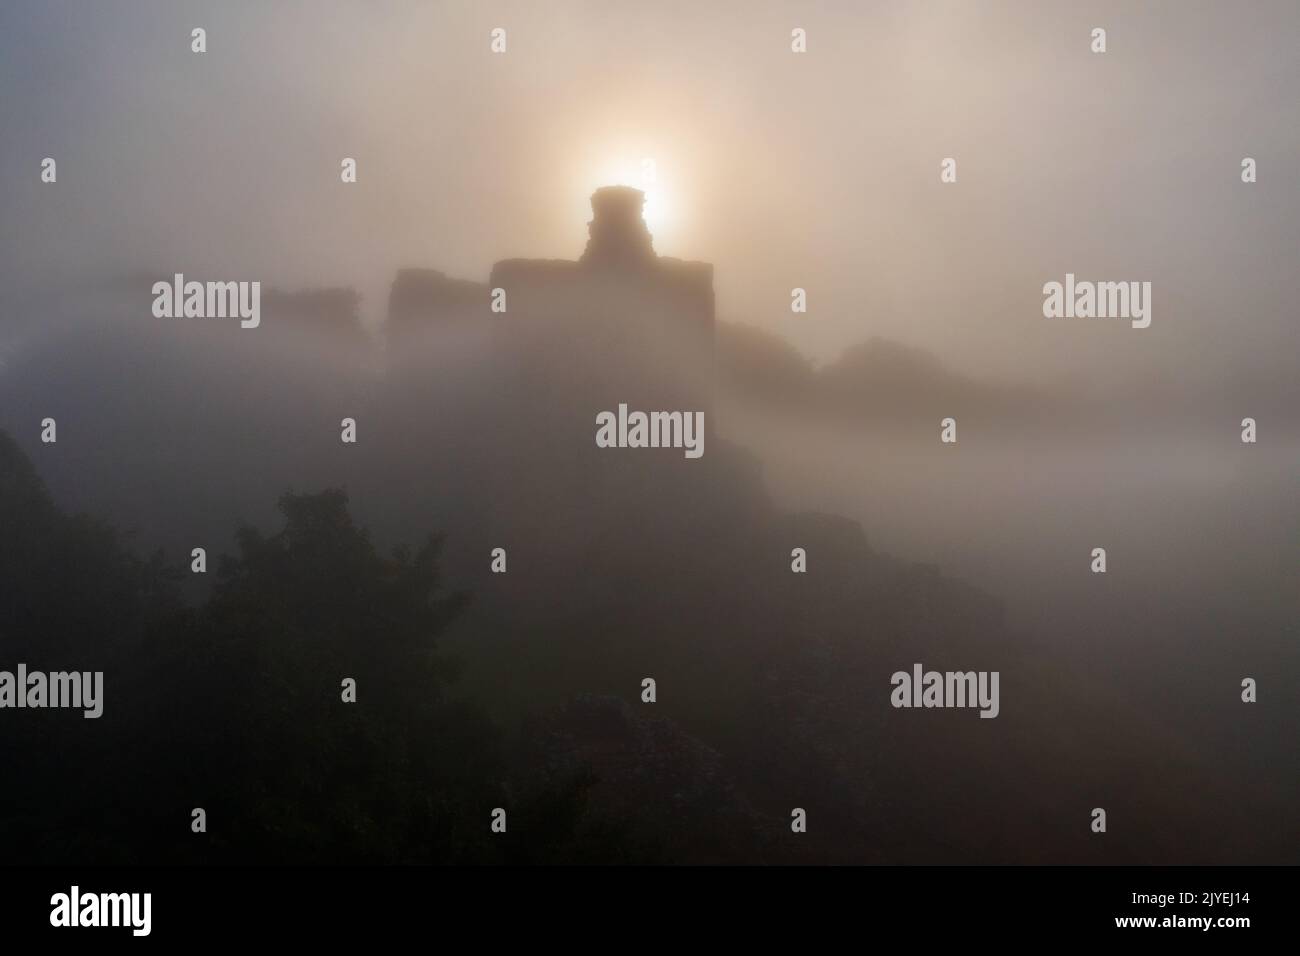 Le château de Norham se lève à travers la brume matinale Banque D'Images